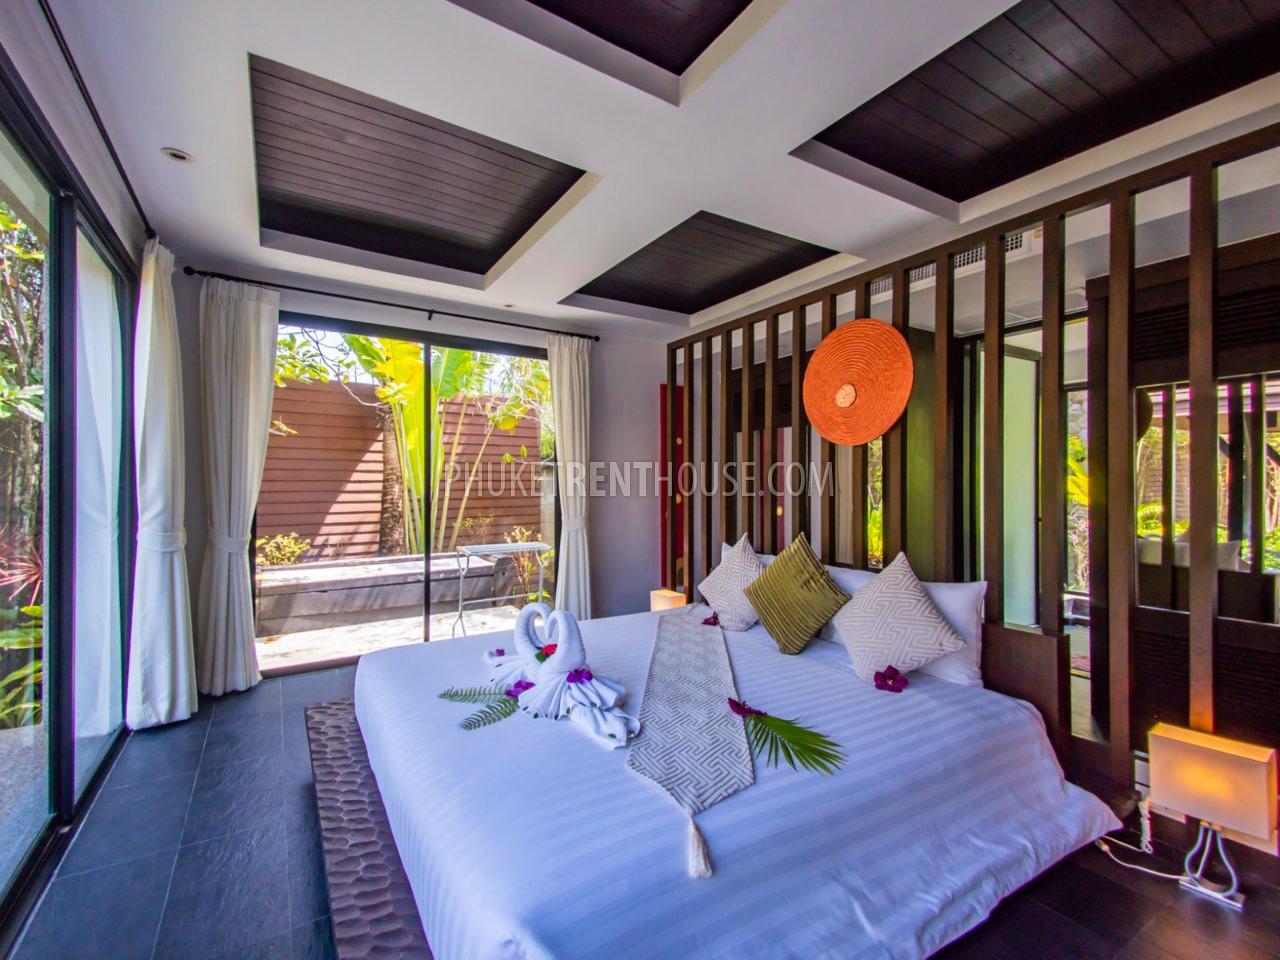 SUR20945: 3 Bedroom Villa with Pool and Garden in Surin. Photo #15